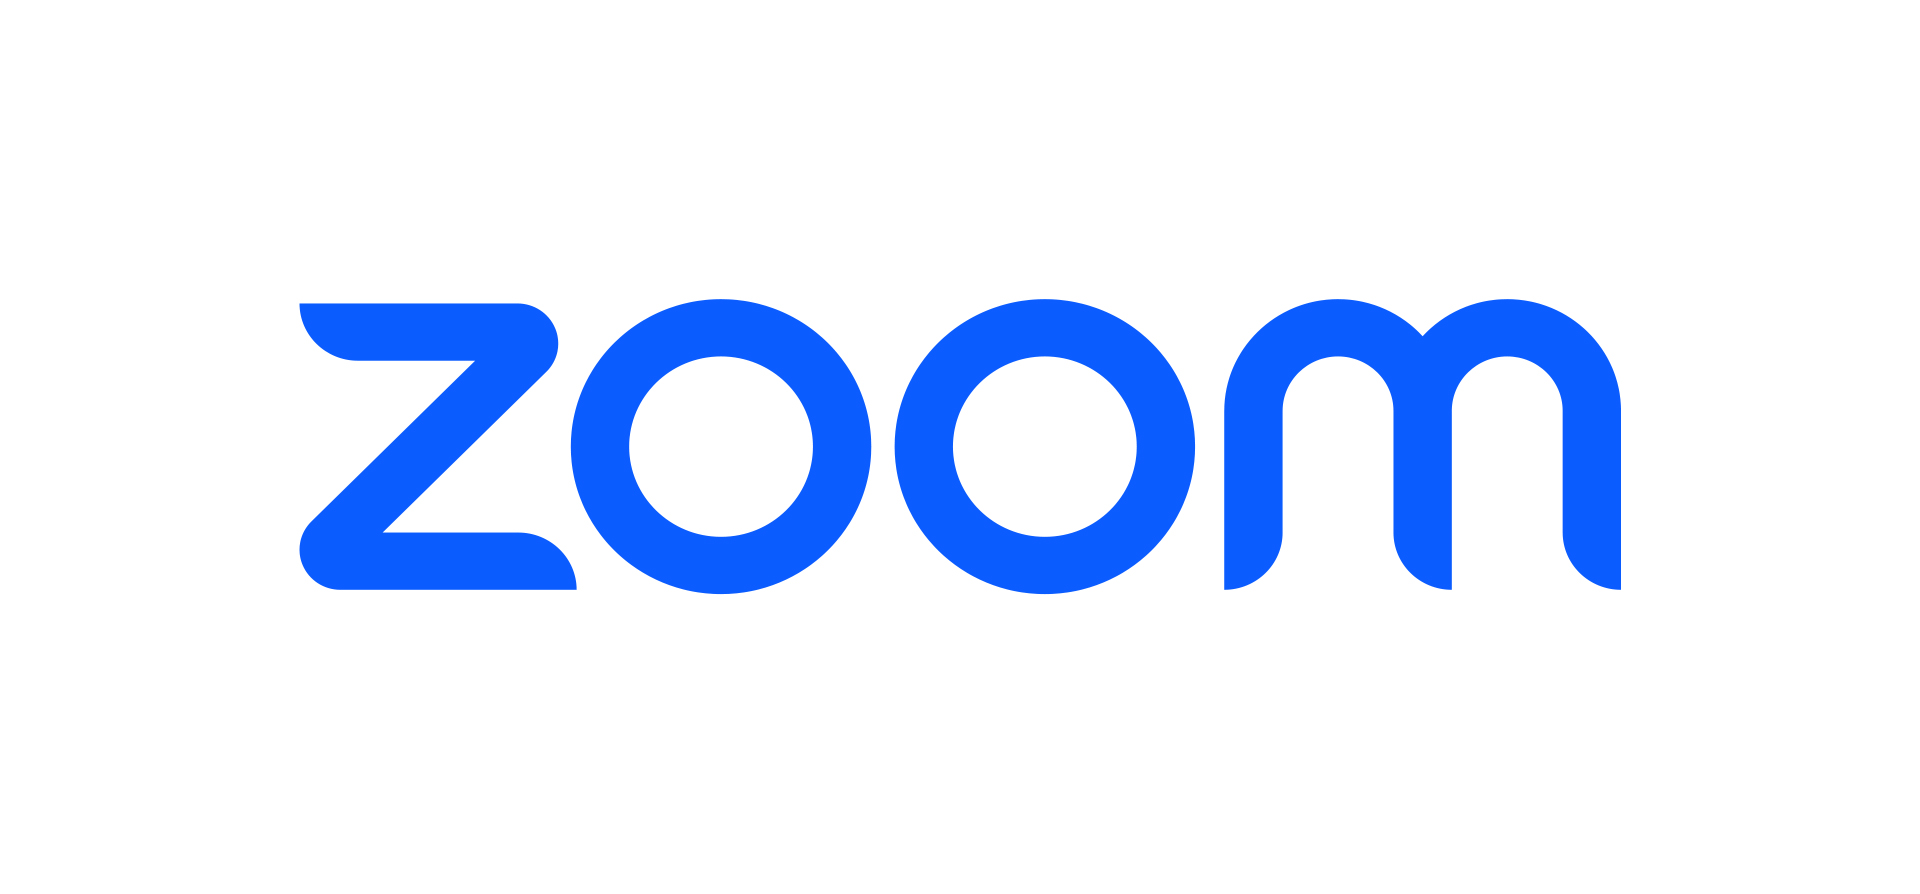 Zoom's logo